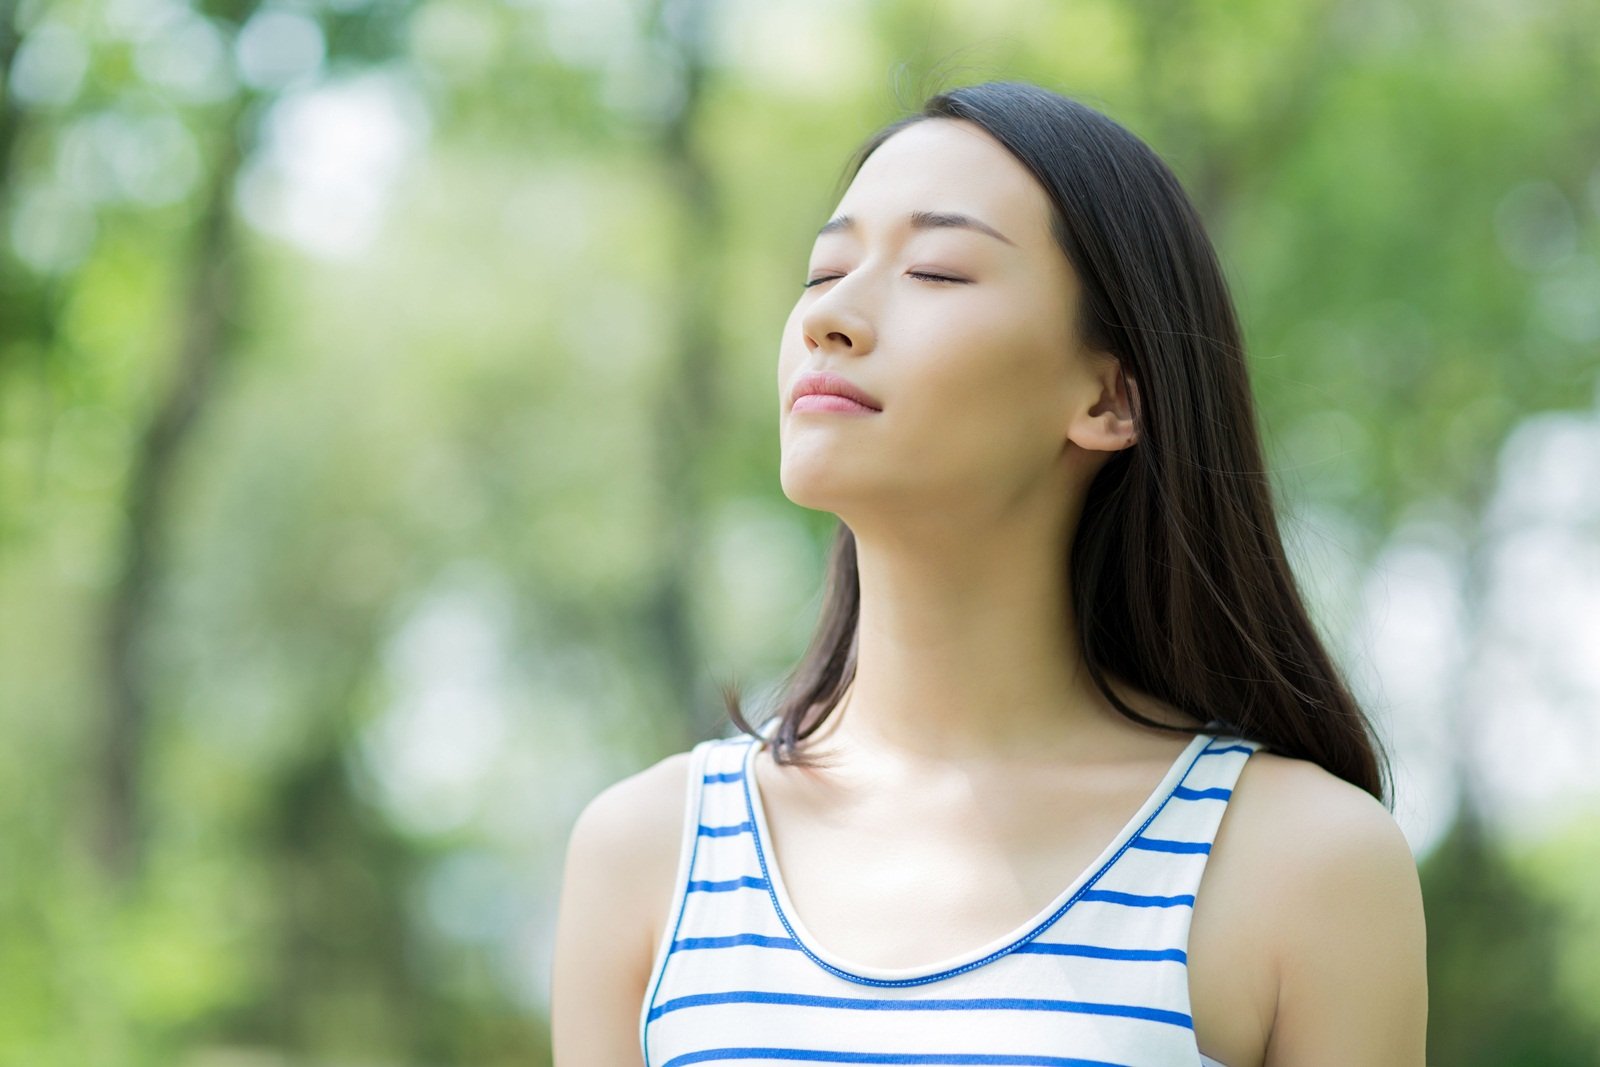 แนะฝึกการหายใจลดความเครียด thaihealth